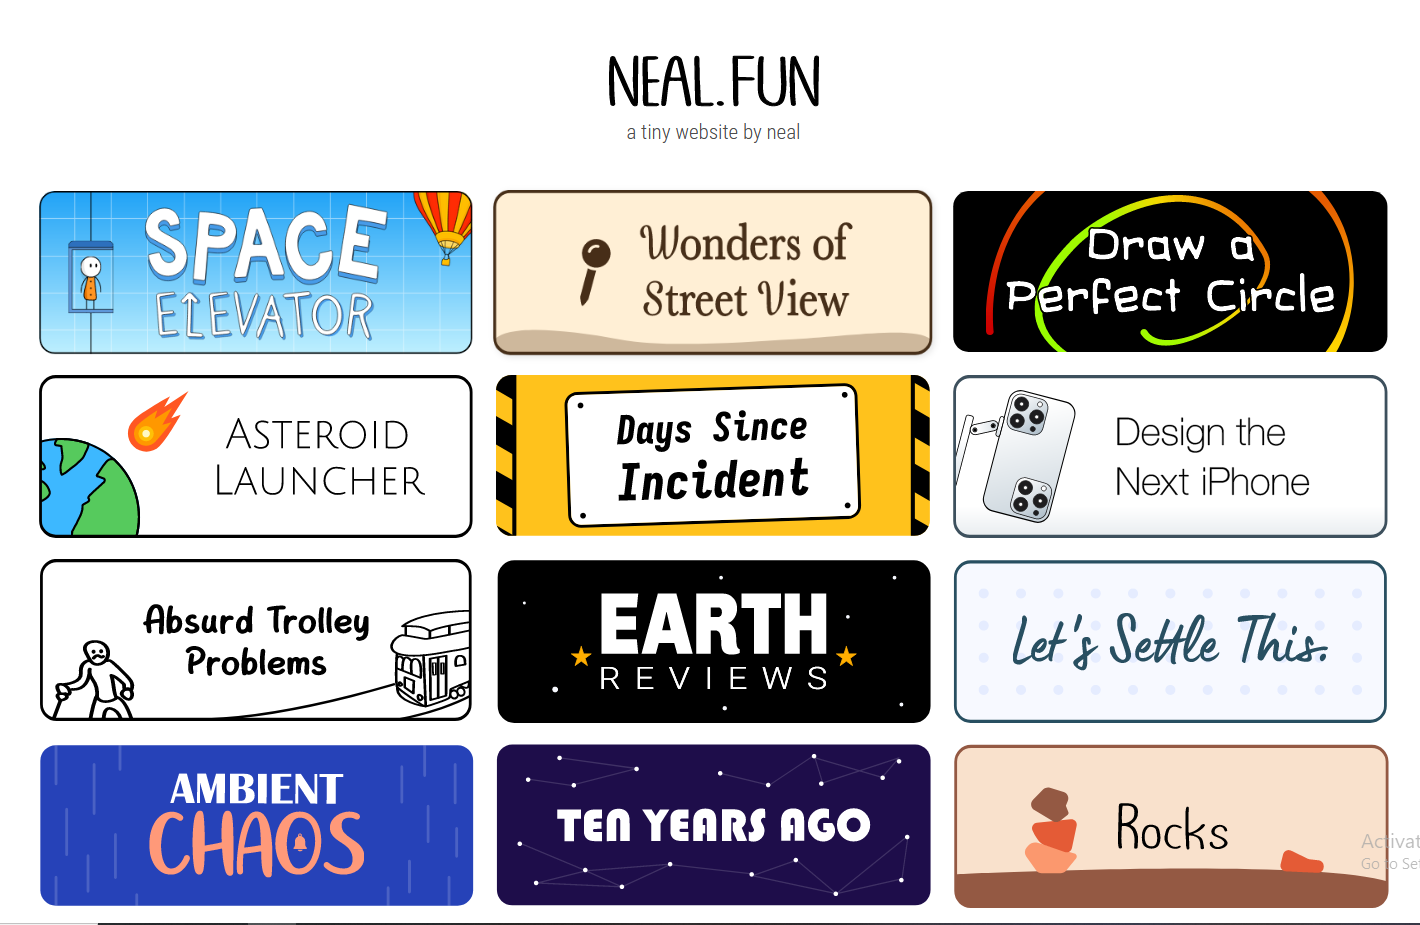 Neal fun. Neal fun Space. Neal fun на русском языке. Neal fun Asteroid Launcher. Neal fun потратьте деньги